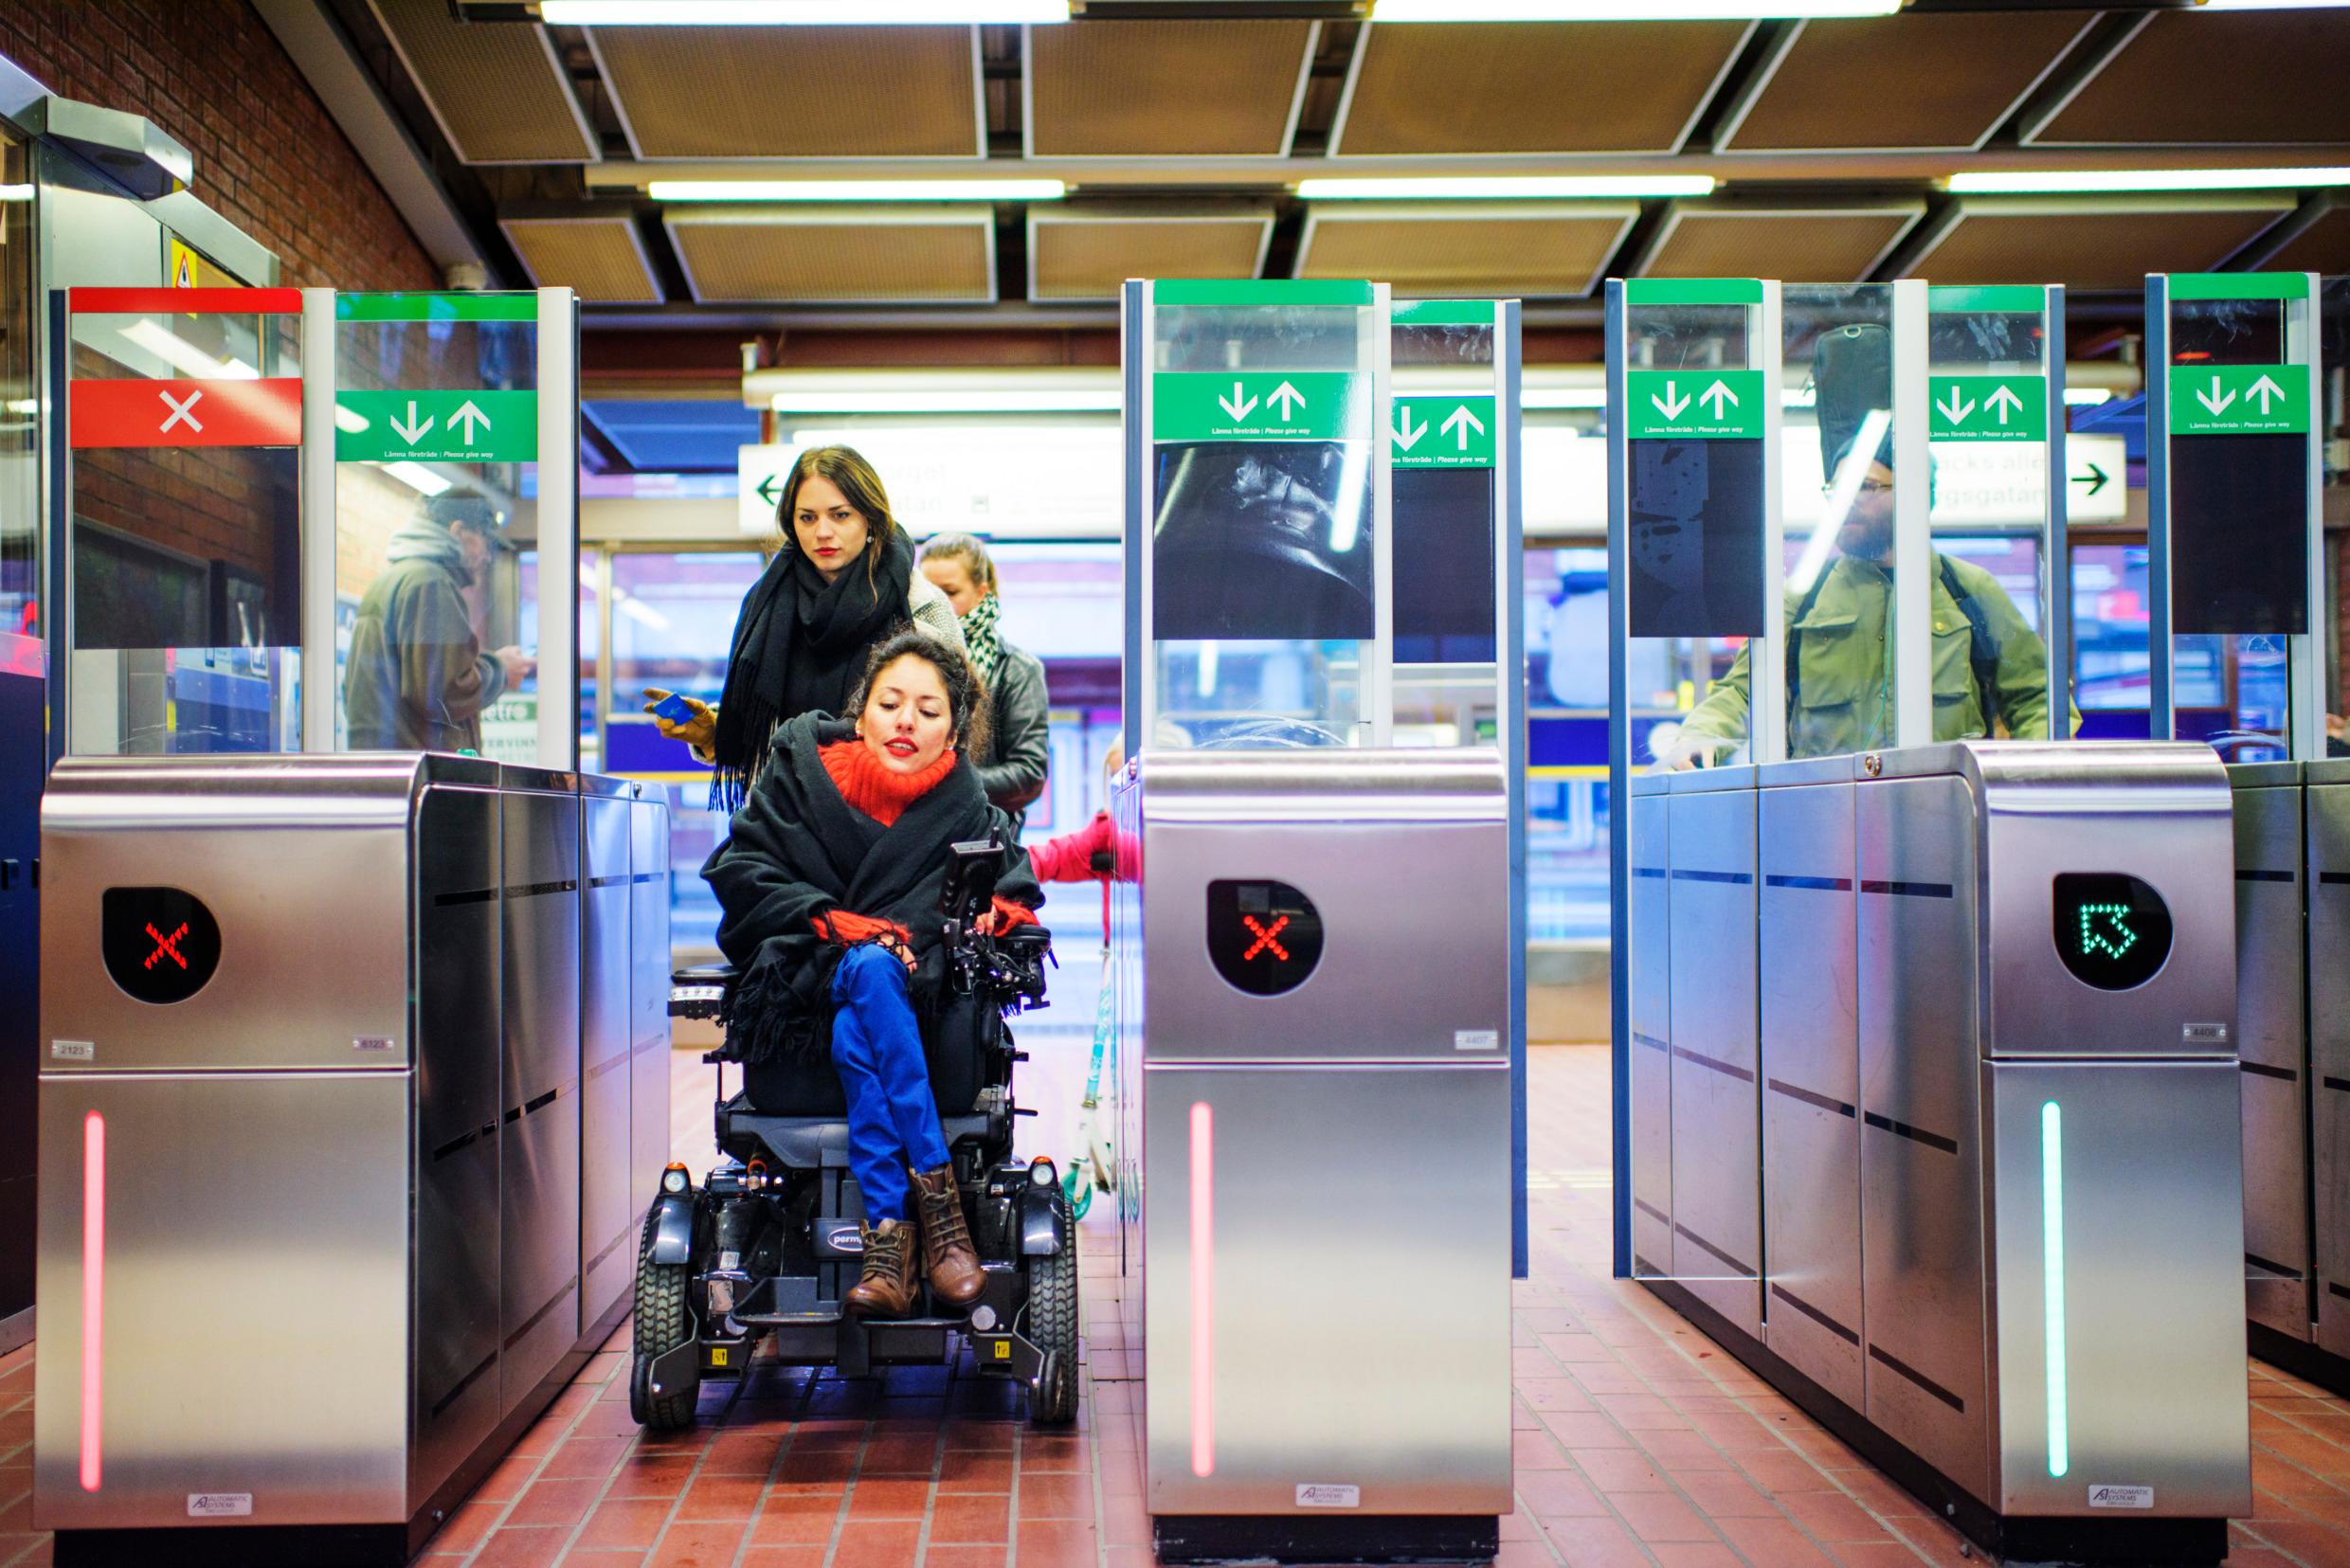 وسائل النقل العام مخصصة لذوي الإعاقة.